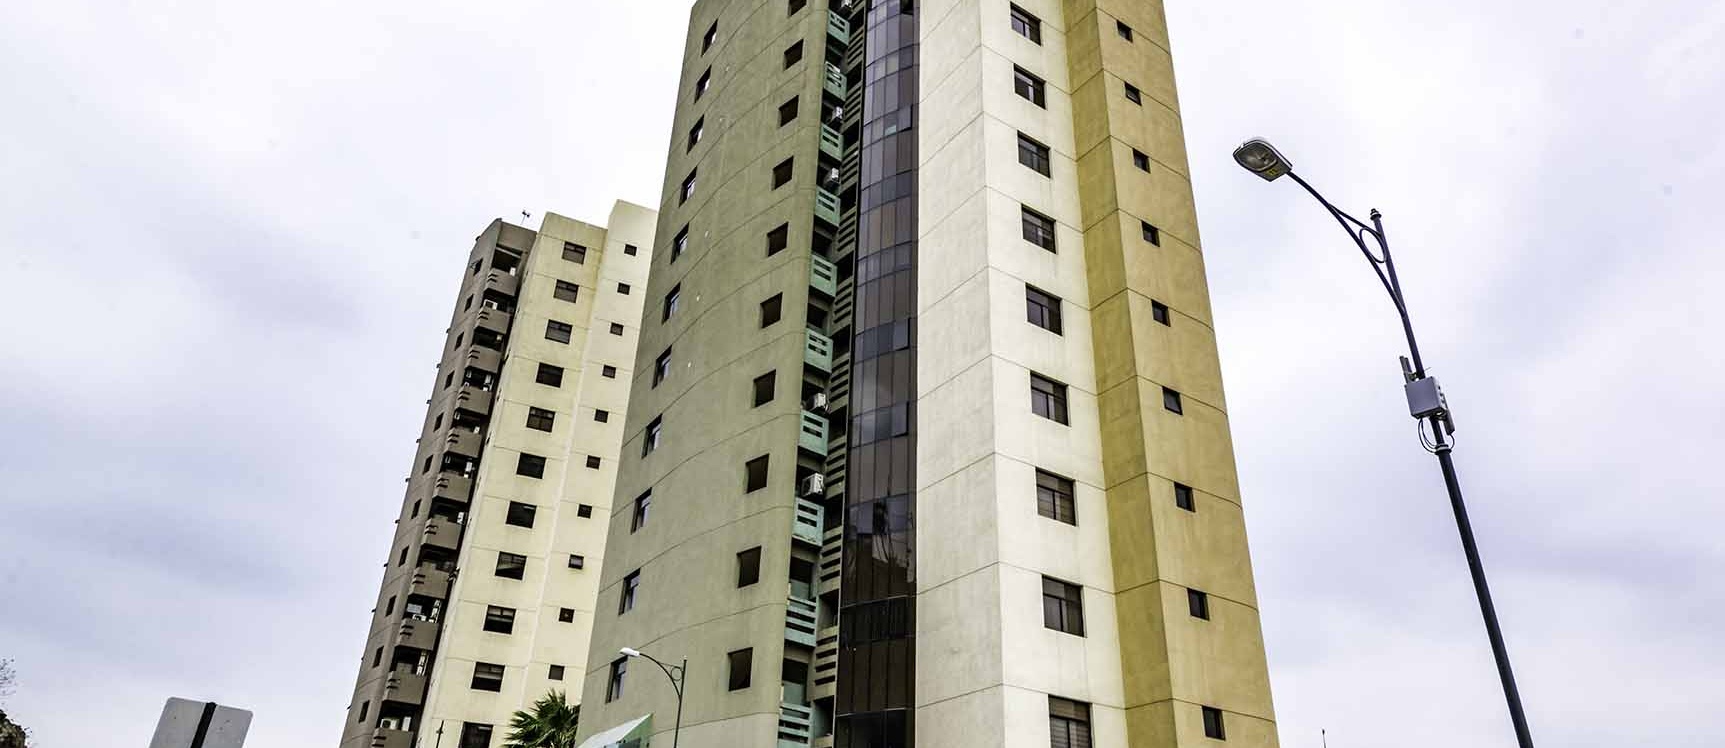 GeoBienes - Departamento en alquiler en Ciudad Colón norte de Guayaquil - Plusvalia Guayaquil Casas de venta y alquiler Inmobiliaria Ecuador